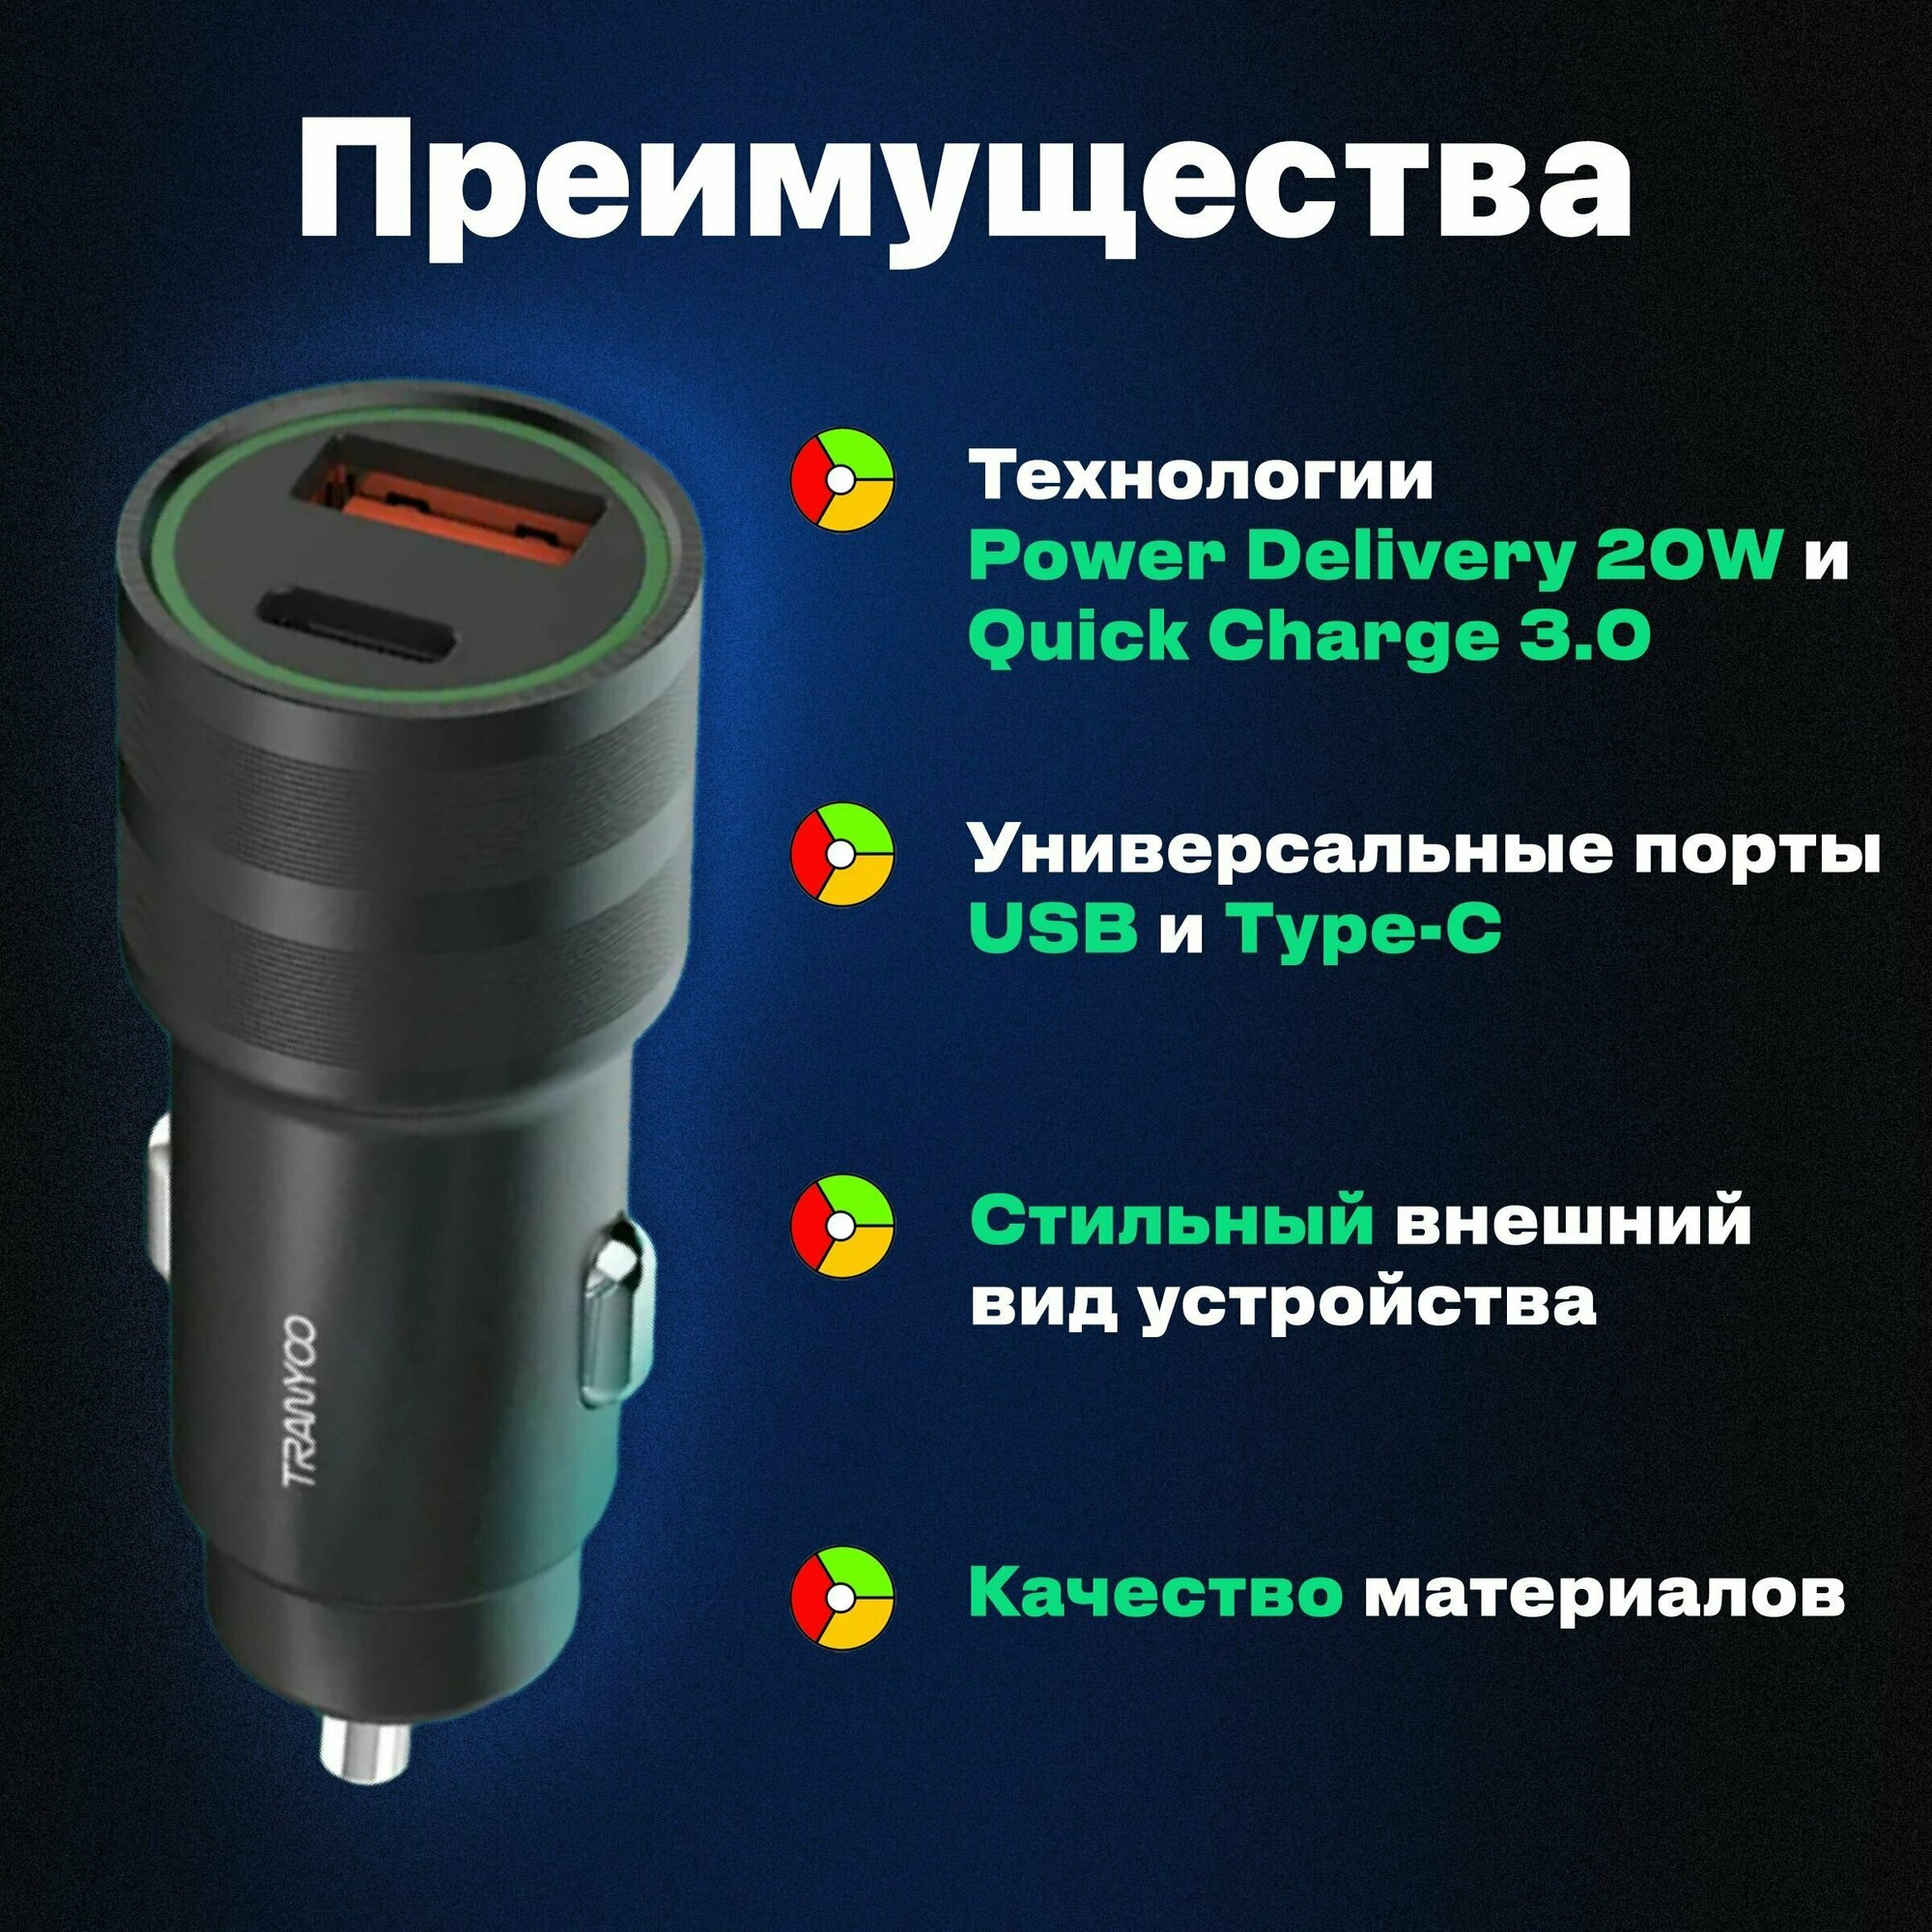 Автомобильная быстрая зарядка TRANYOO Черный в прикуриватель для смартфонов / Зарядное устройство на 2 порта USB + Type-C Black Quick Charge 3.0